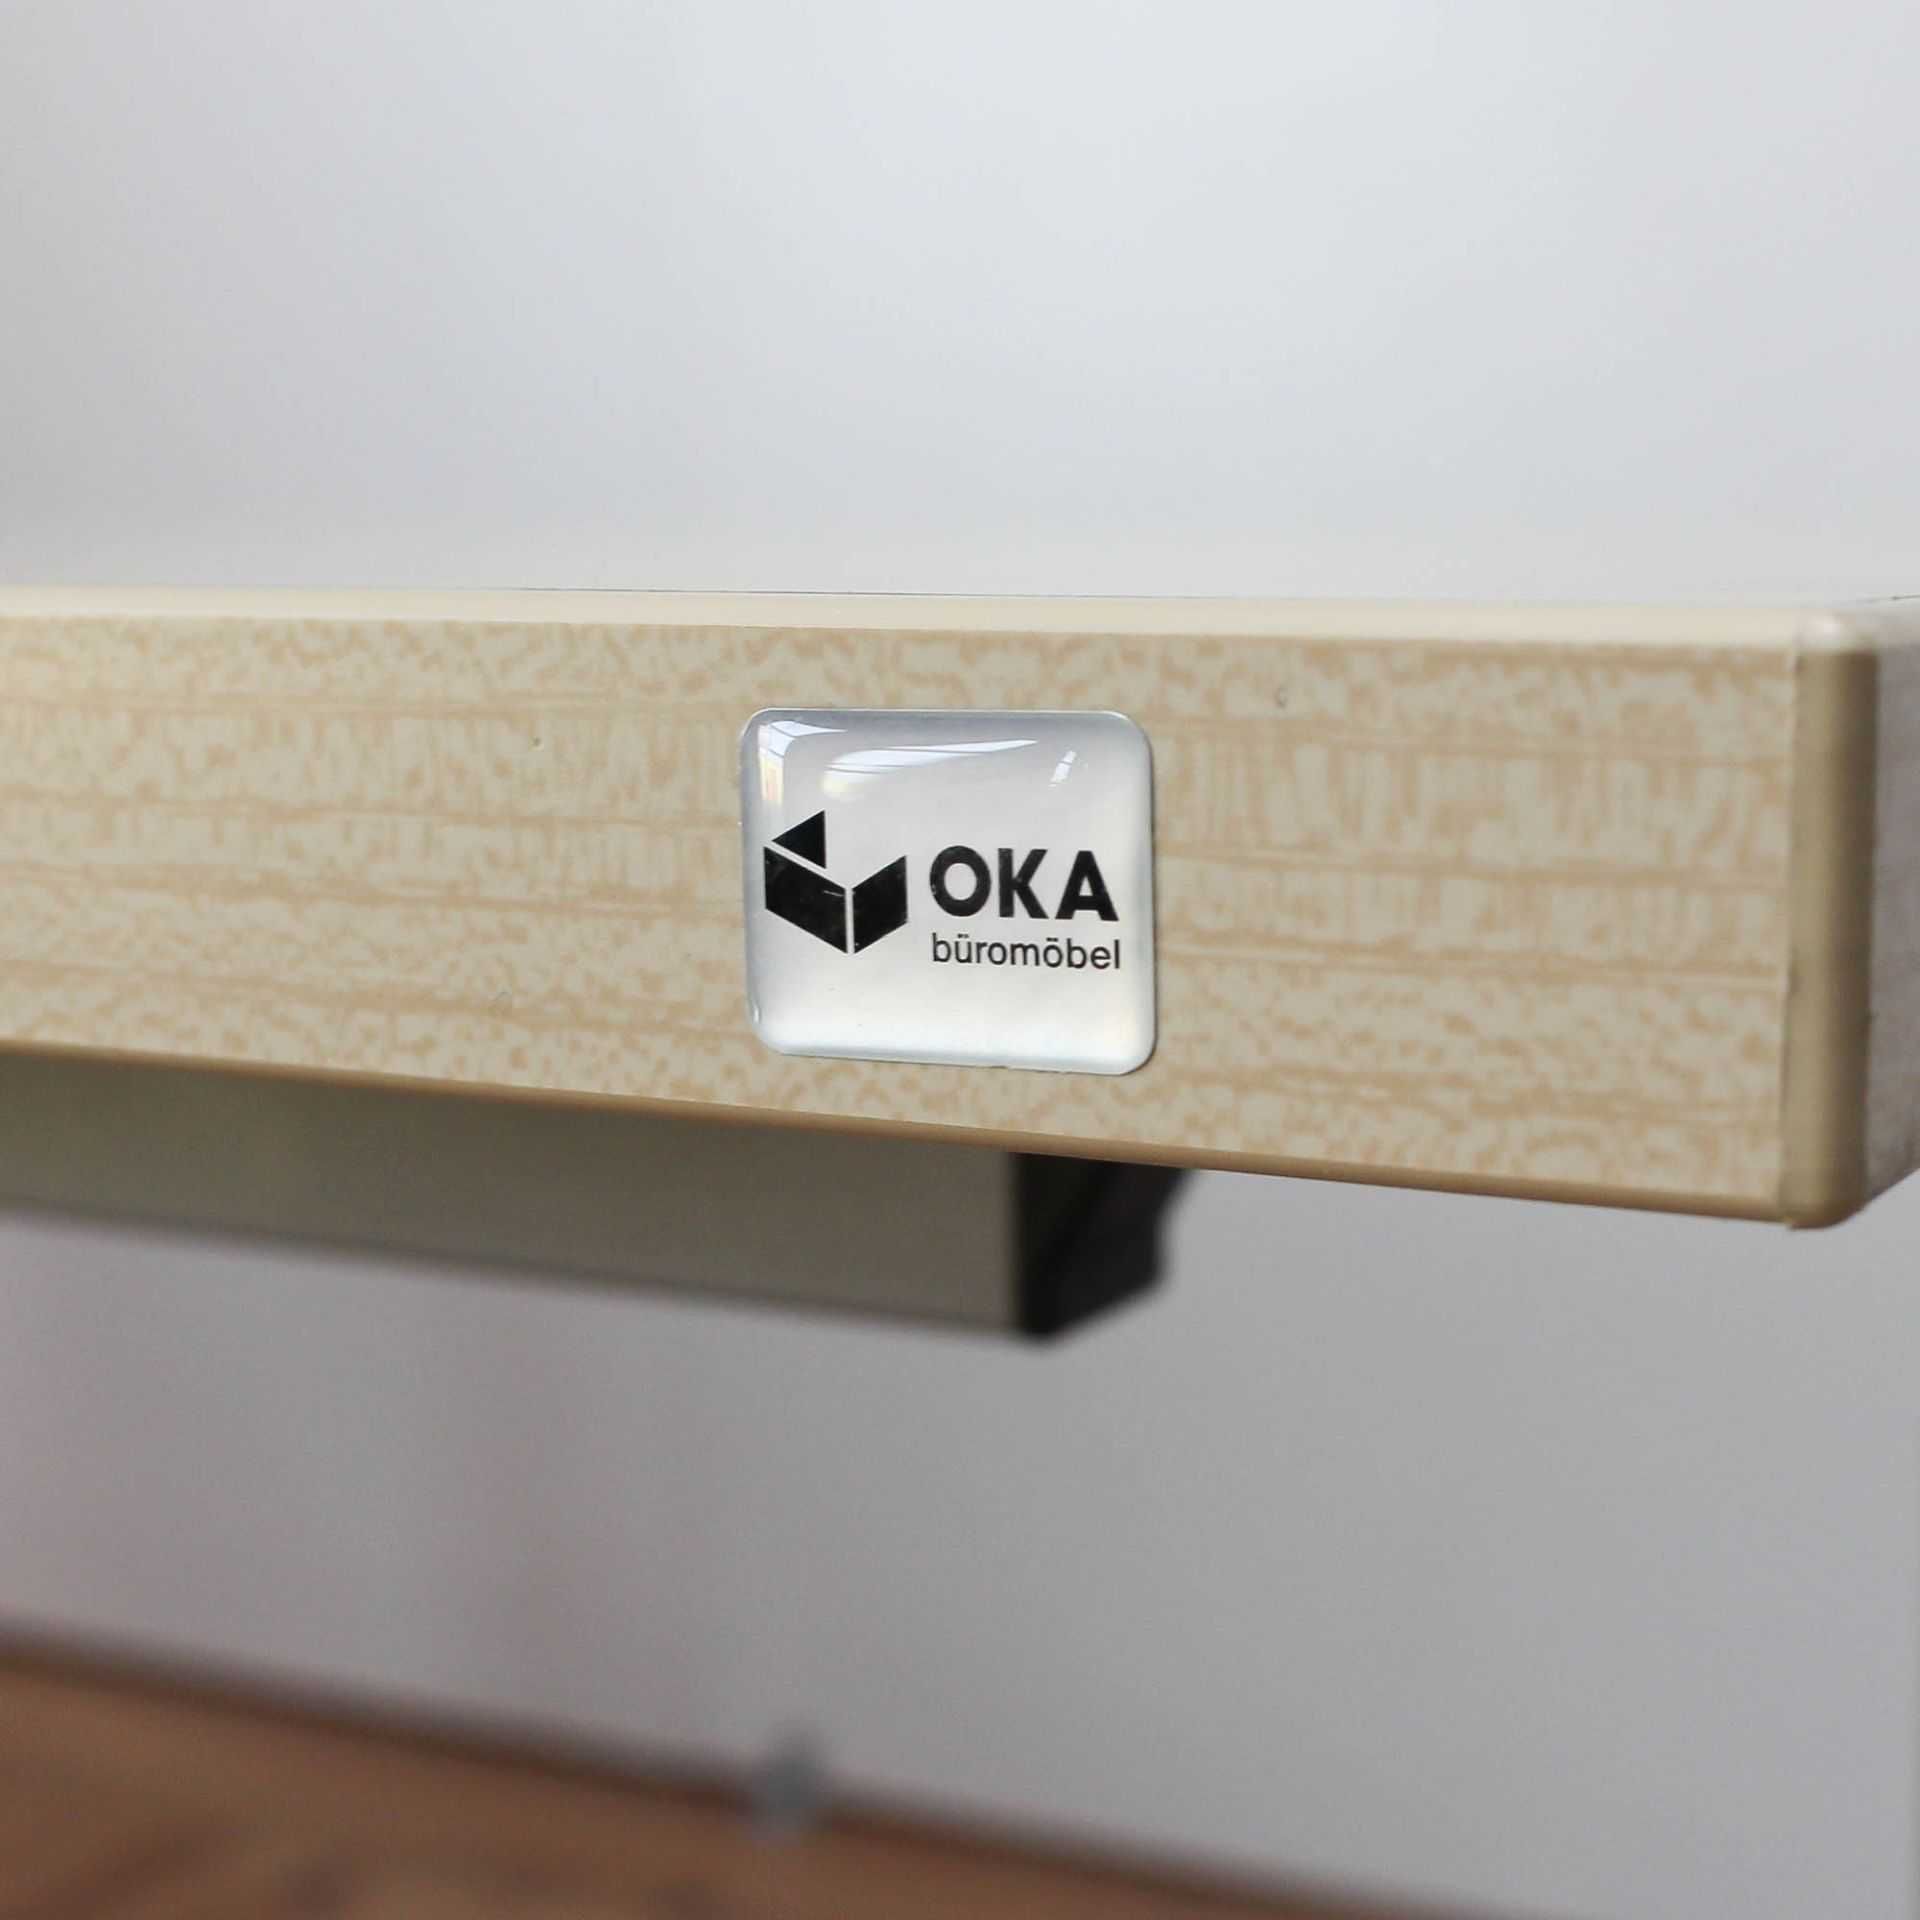 Biurka biurowe renomowanej firmy OKA